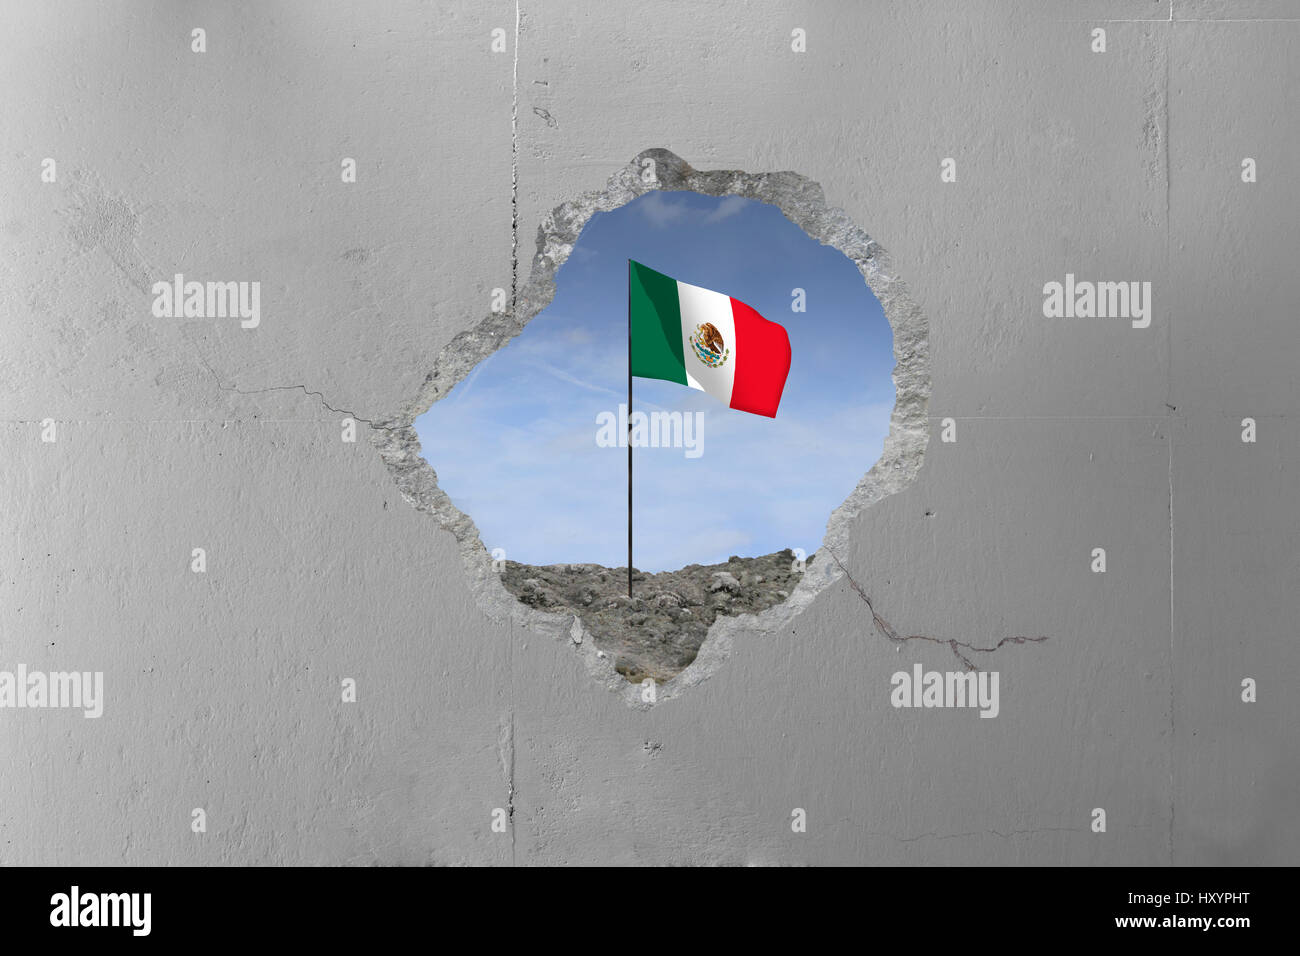 Bandera Mexicana detrás de un muro de hormigón. Foto de stock